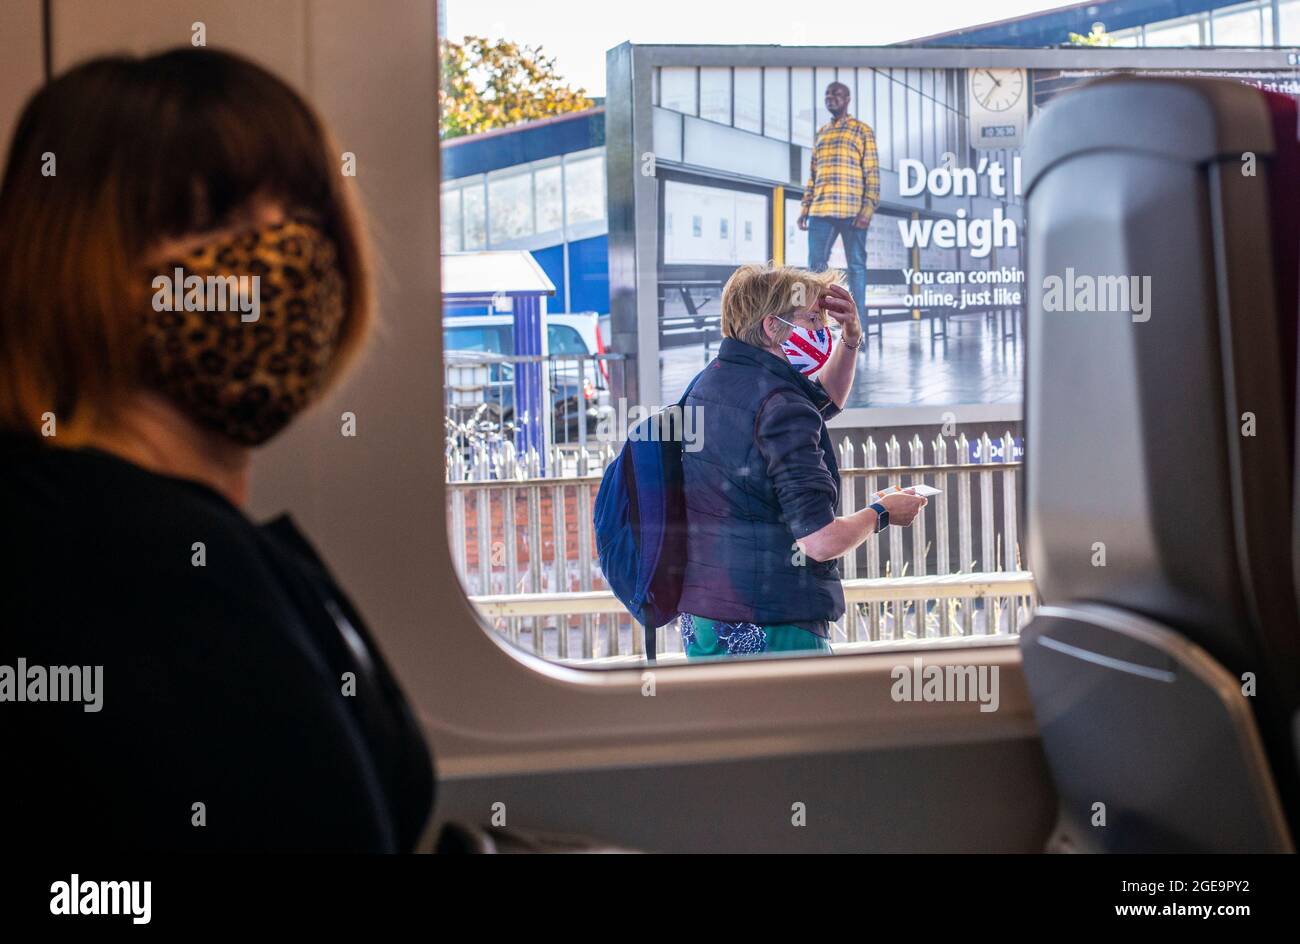 Eine Frau, die ein Gesicht von Union Jack trägt, fährt auf einem Bahnsteig vorbei, während eine andere Frau in einem Zug in Richtung Kamera schaut. Stockfoto